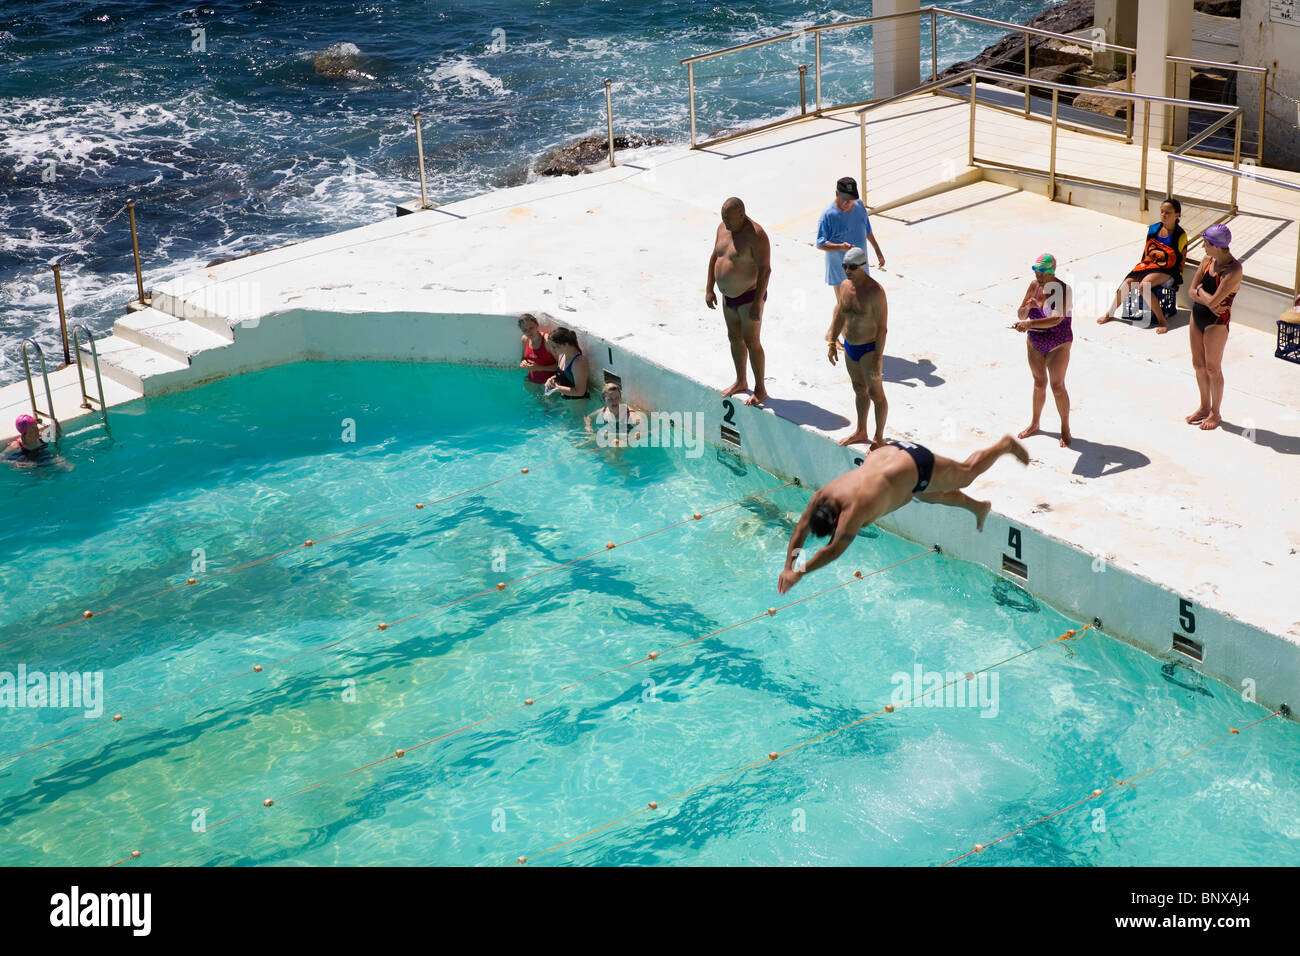 Schwimmer am Bondi Icebergs Pool, auch bekannt als die Bondi-Bäder. Bondi Beach, Sydney, New South Wales, Australien Stockfoto